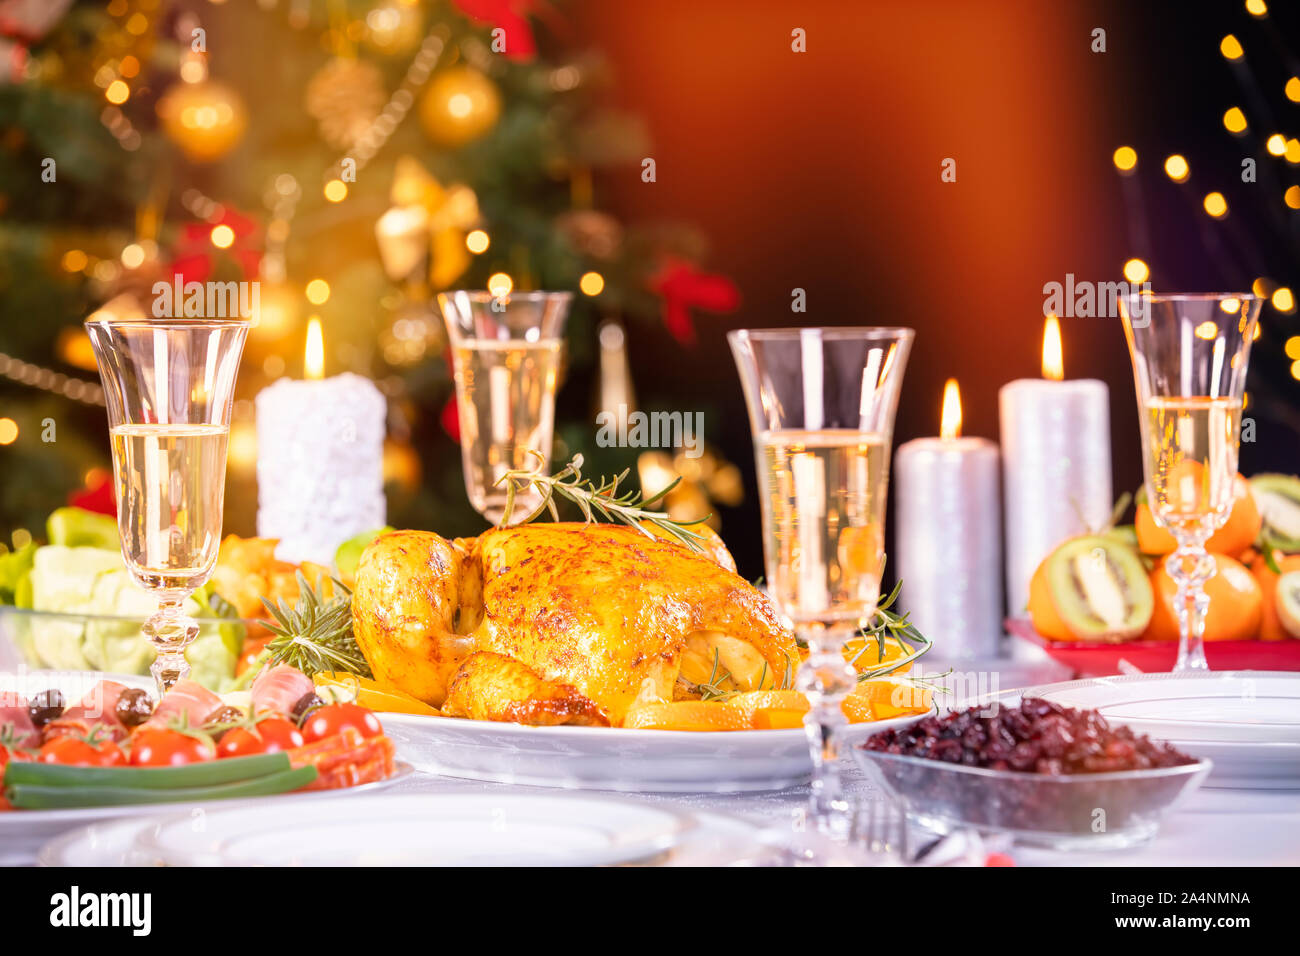 La cena de Navidad. Pollos contra resplandecientes luces navideñas y las velas encendidas. Vacaciones decoradas mesa, árbol de Navidad, champán y pavo asado, Foto de stock